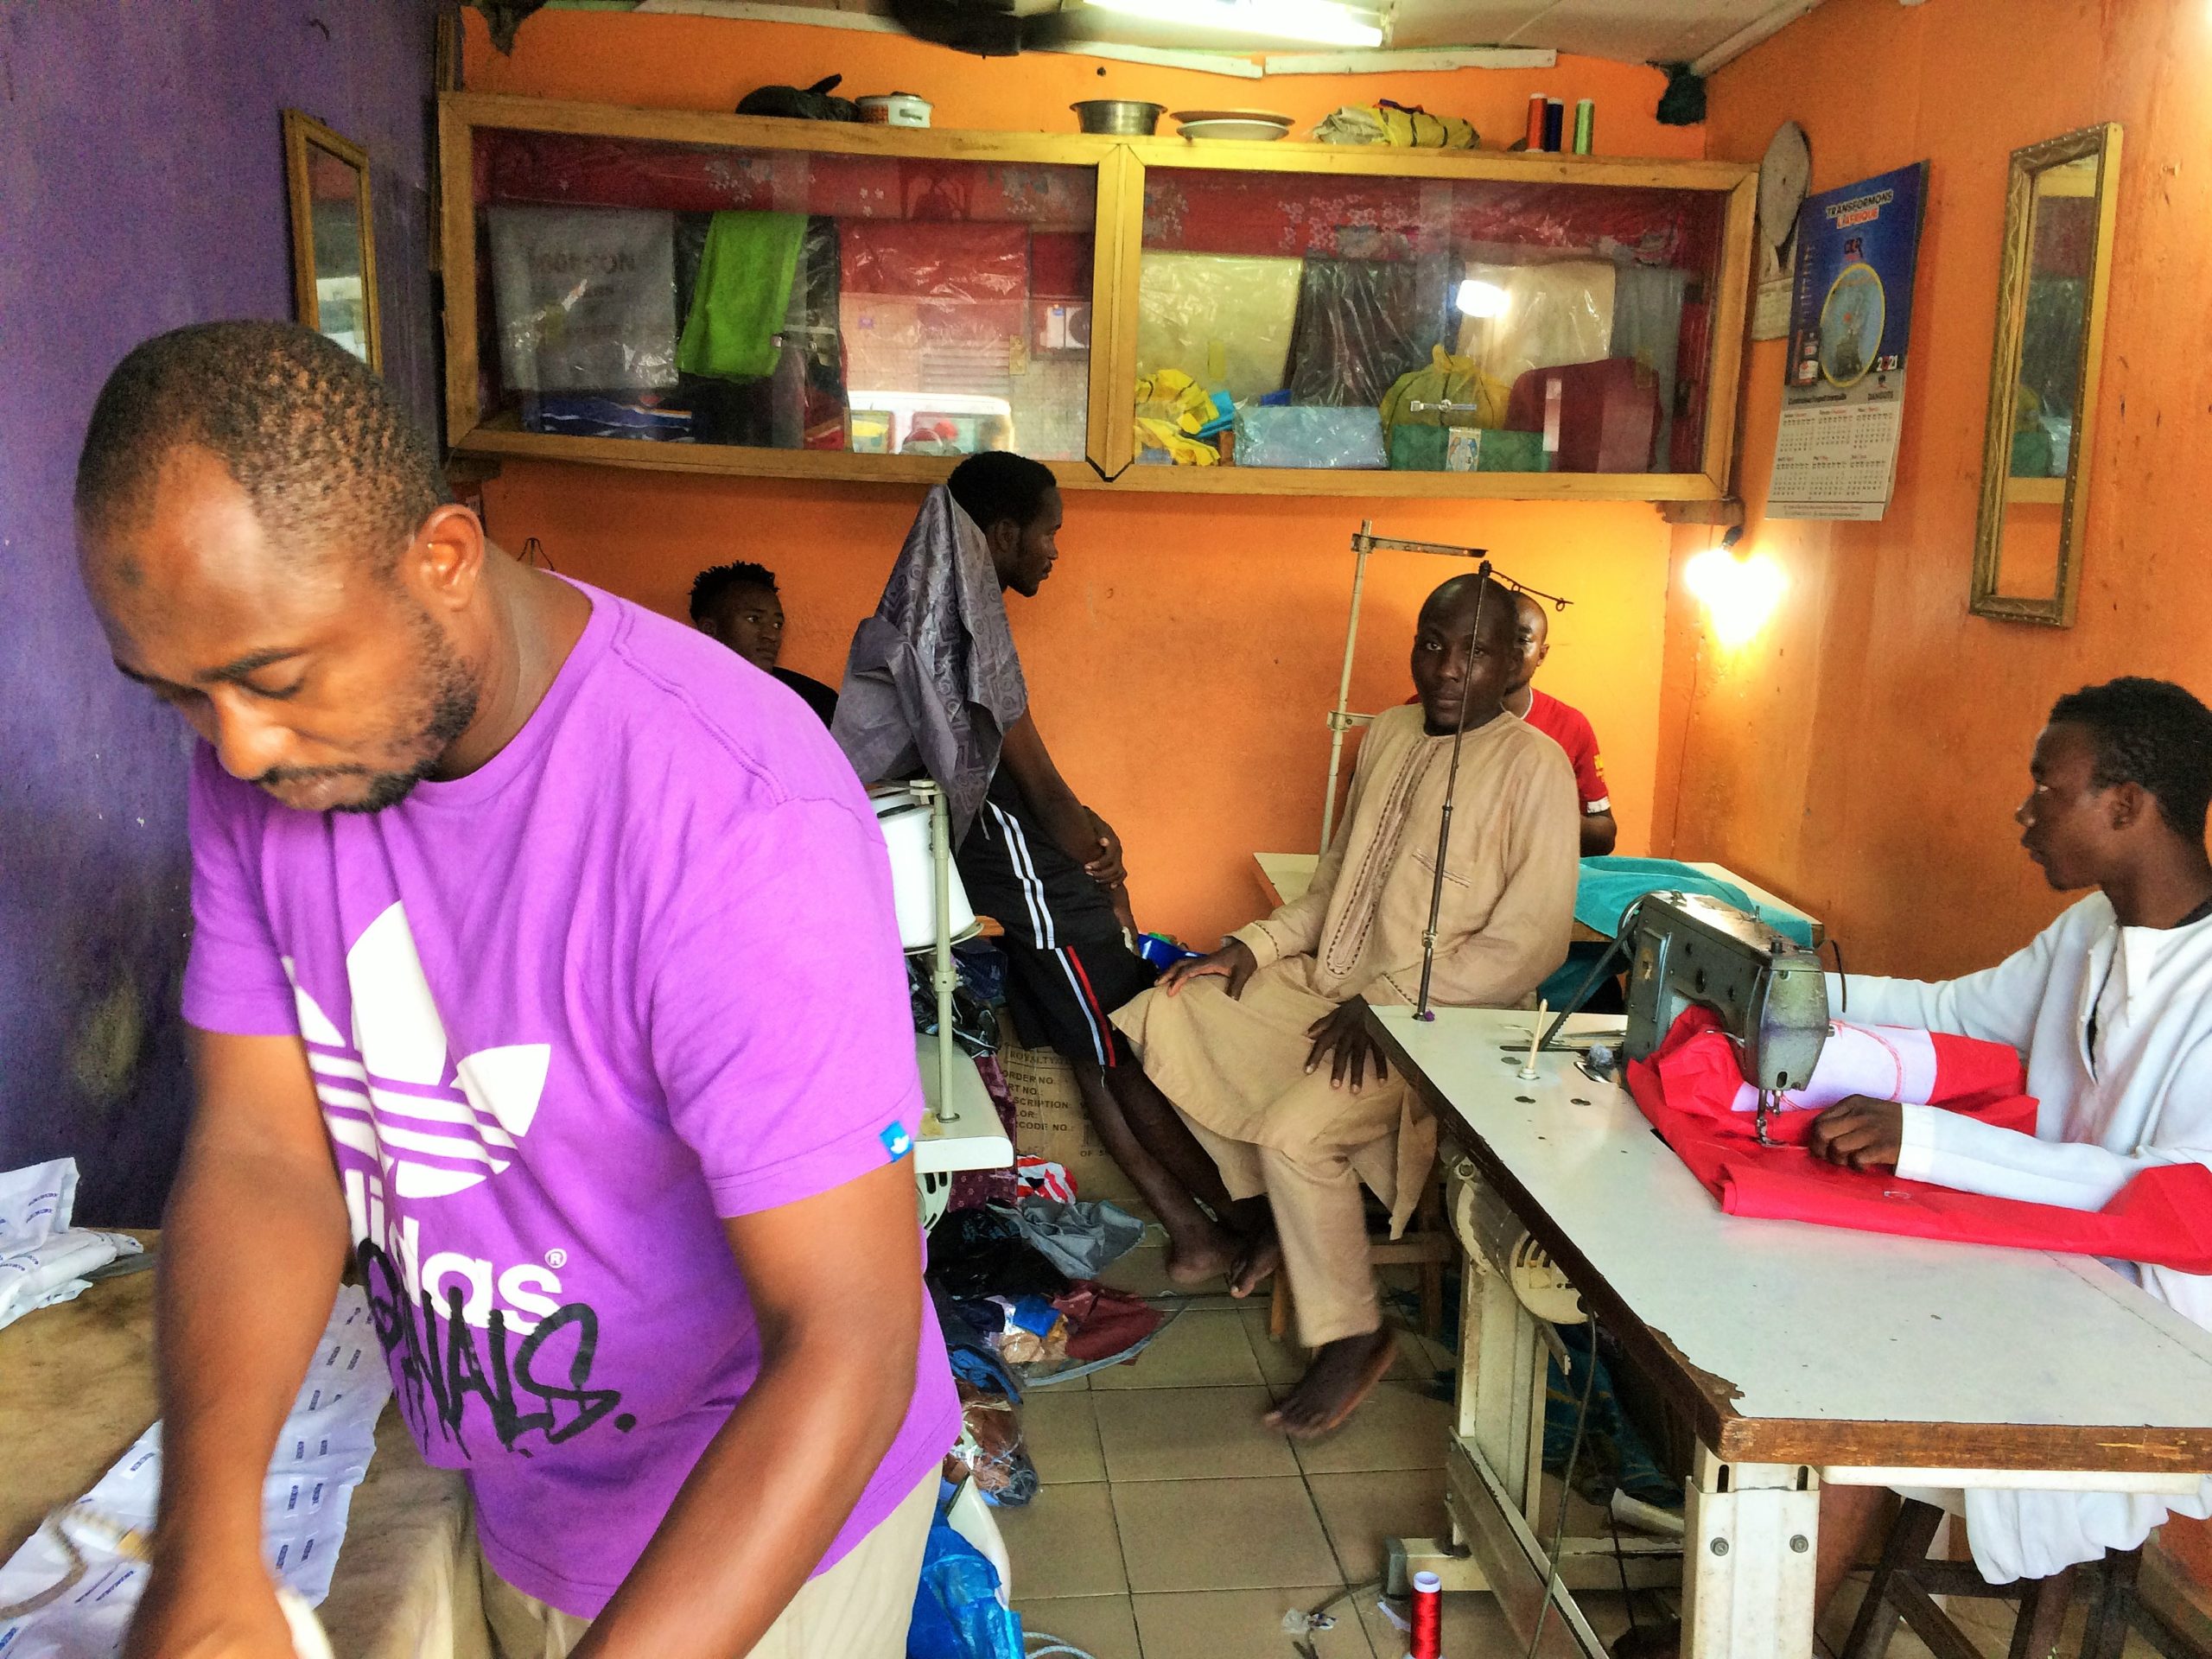 Abdoulaye-Mohamadou-tee-shirt-violetdans-son-atelier-de-couture-en-train-de-repasser-le-boubou-dun-client-a-quelques-jours-du-Ramadan-2021